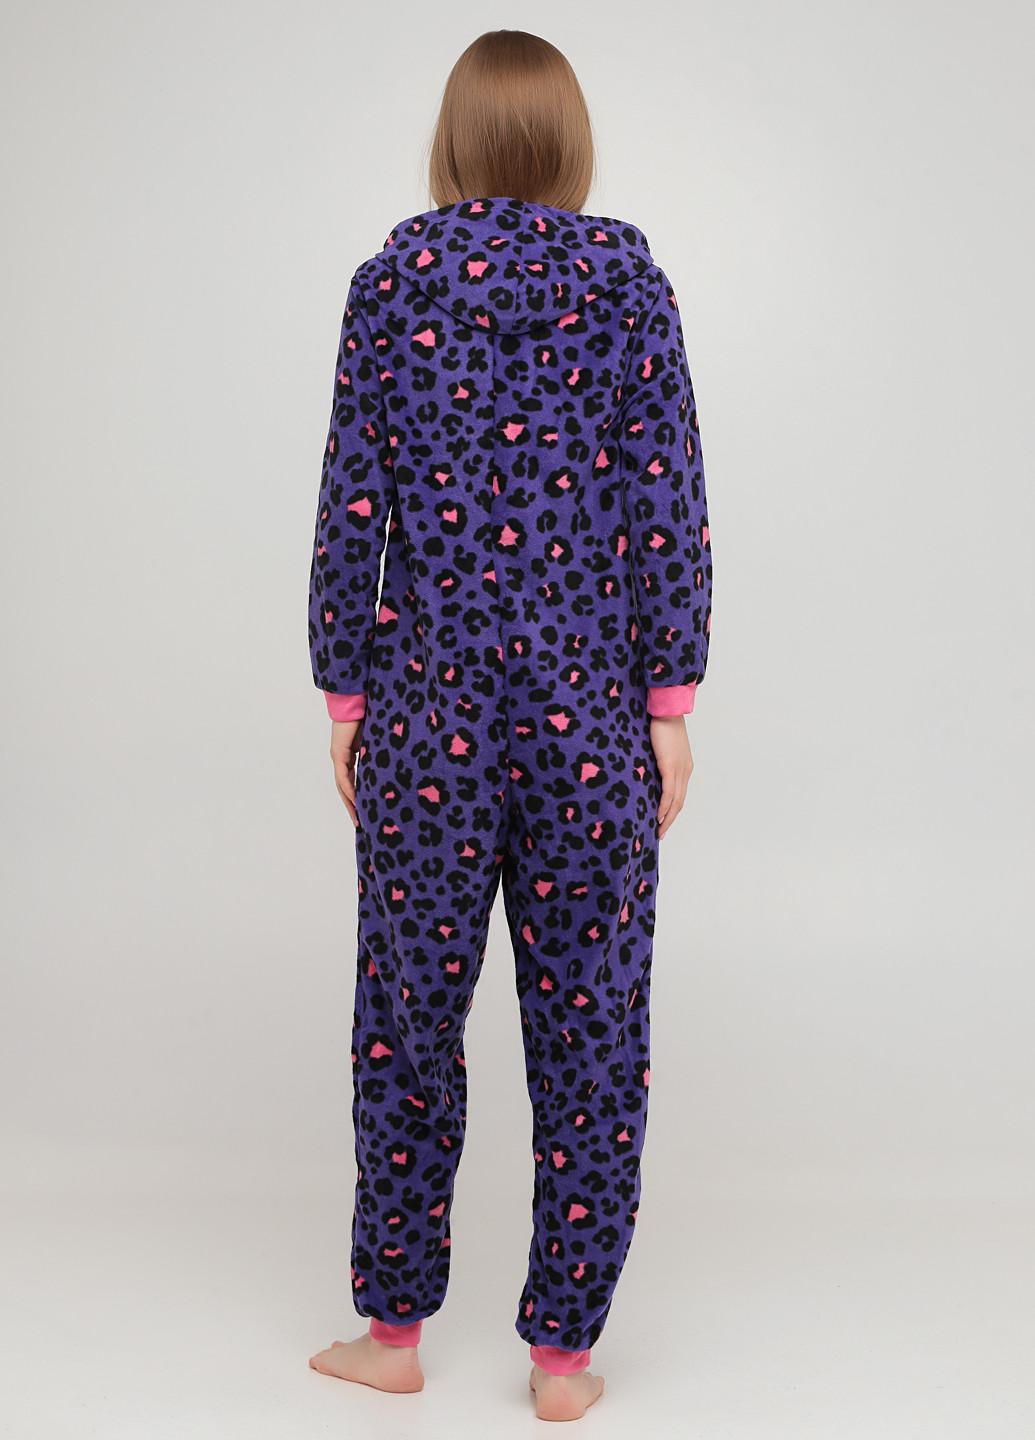 Комбінезон Studio комбінезон-брюки леопардовий темно-фіолетовий домашній поліестер, фліс